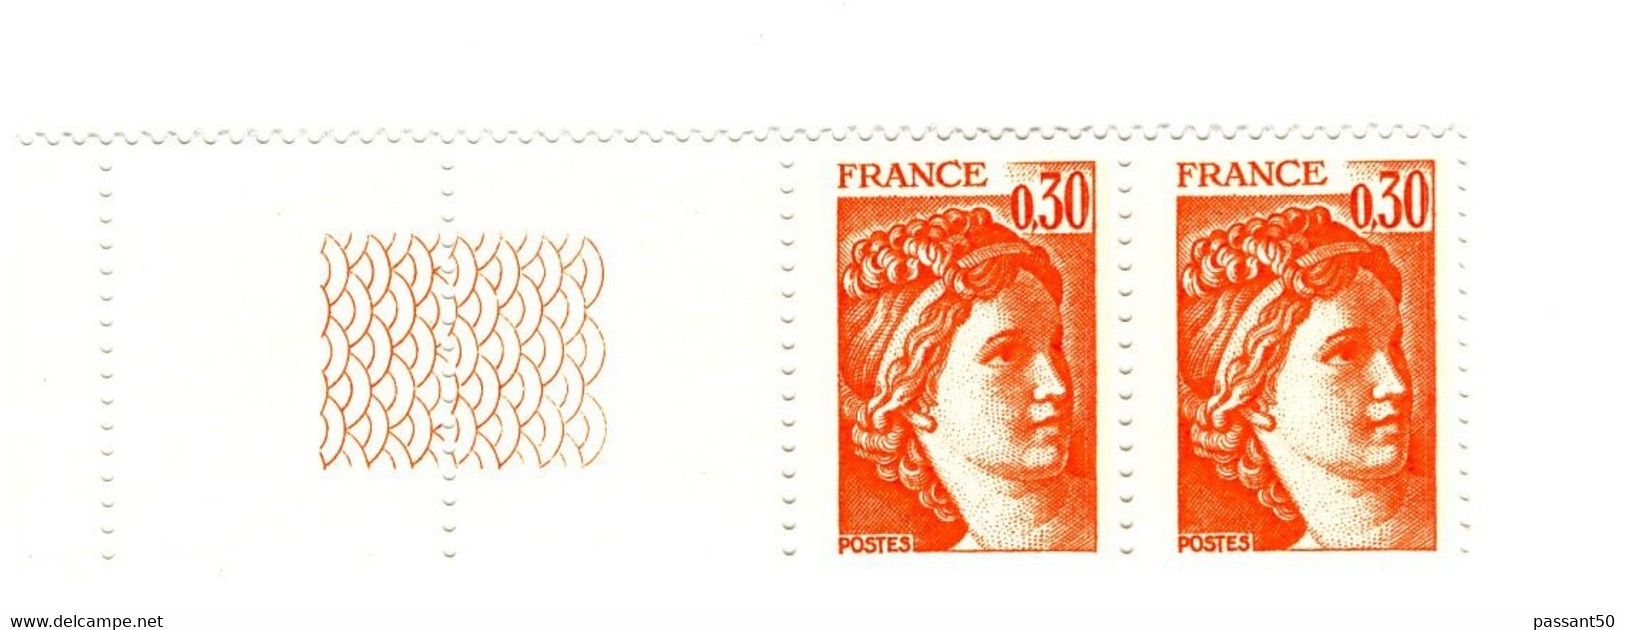 Sabine 0.30fr Orange YT 1968g En Paire Bord De Feuille Guilloché. Superbe Et Pas Courant, Voir Le Scan. Cote YT : 3 €. - Neufs